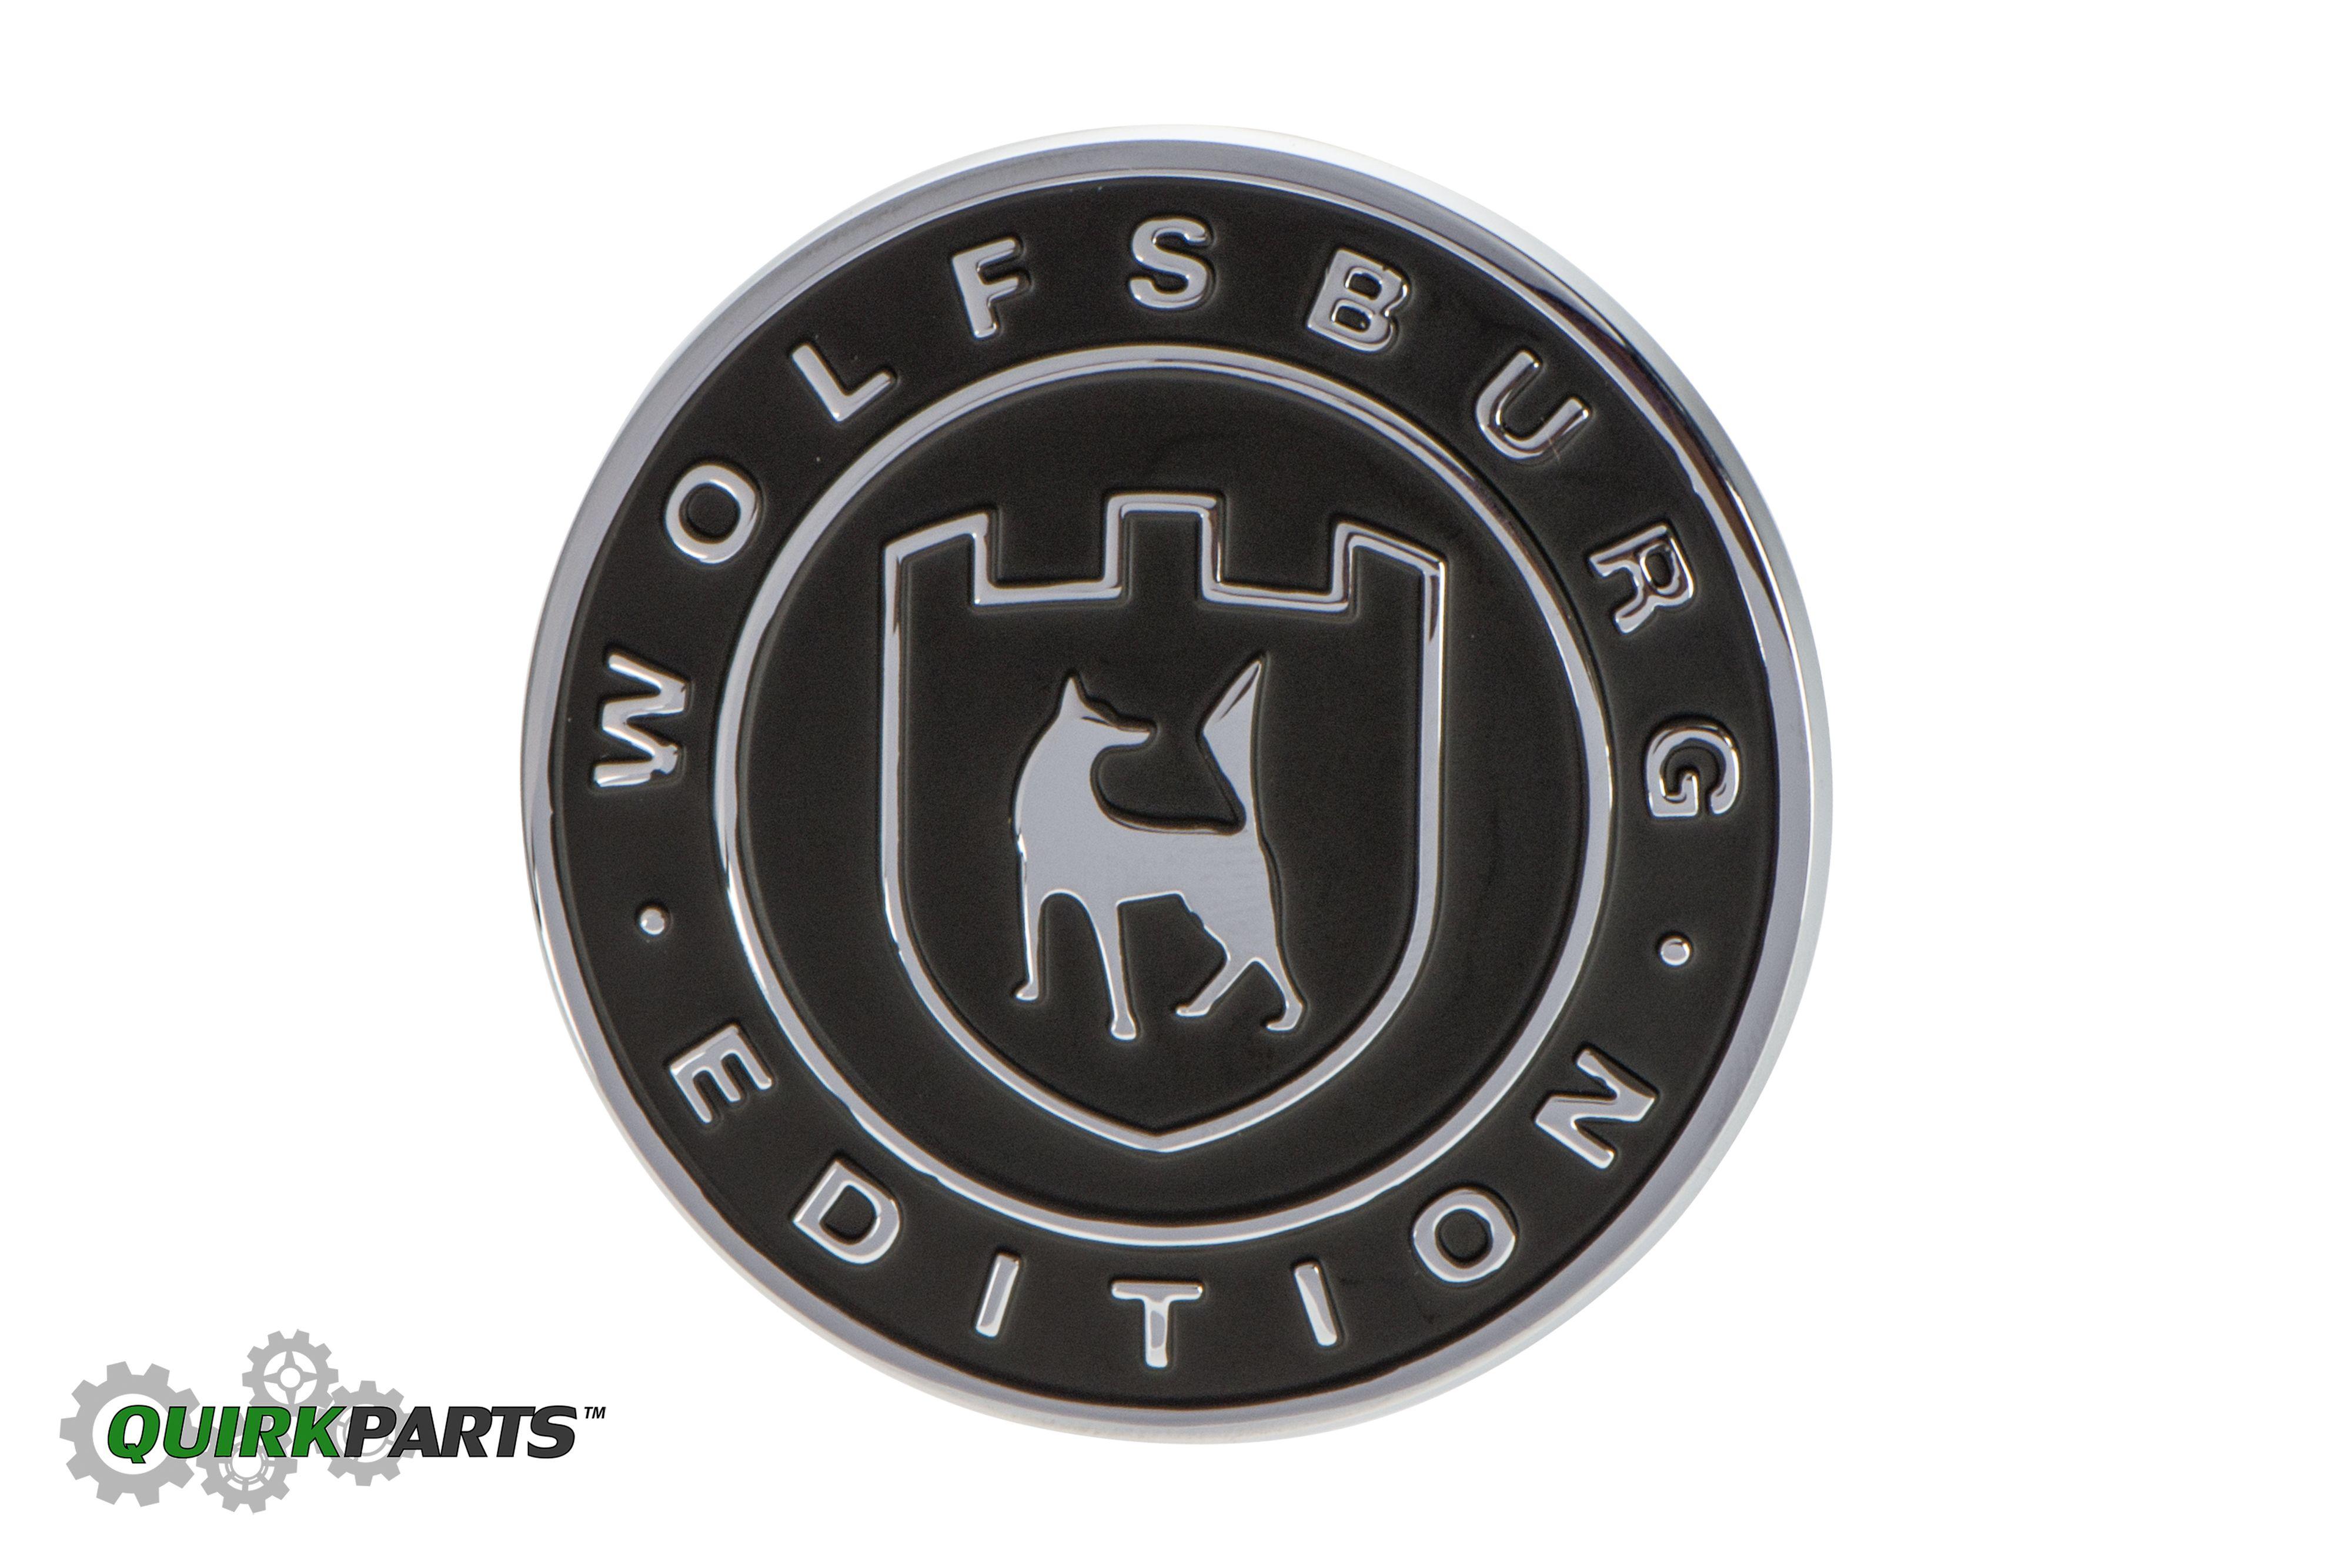 VW Wolf Logo - VWVortex.com rear VW logo with Wolfsburg badge??